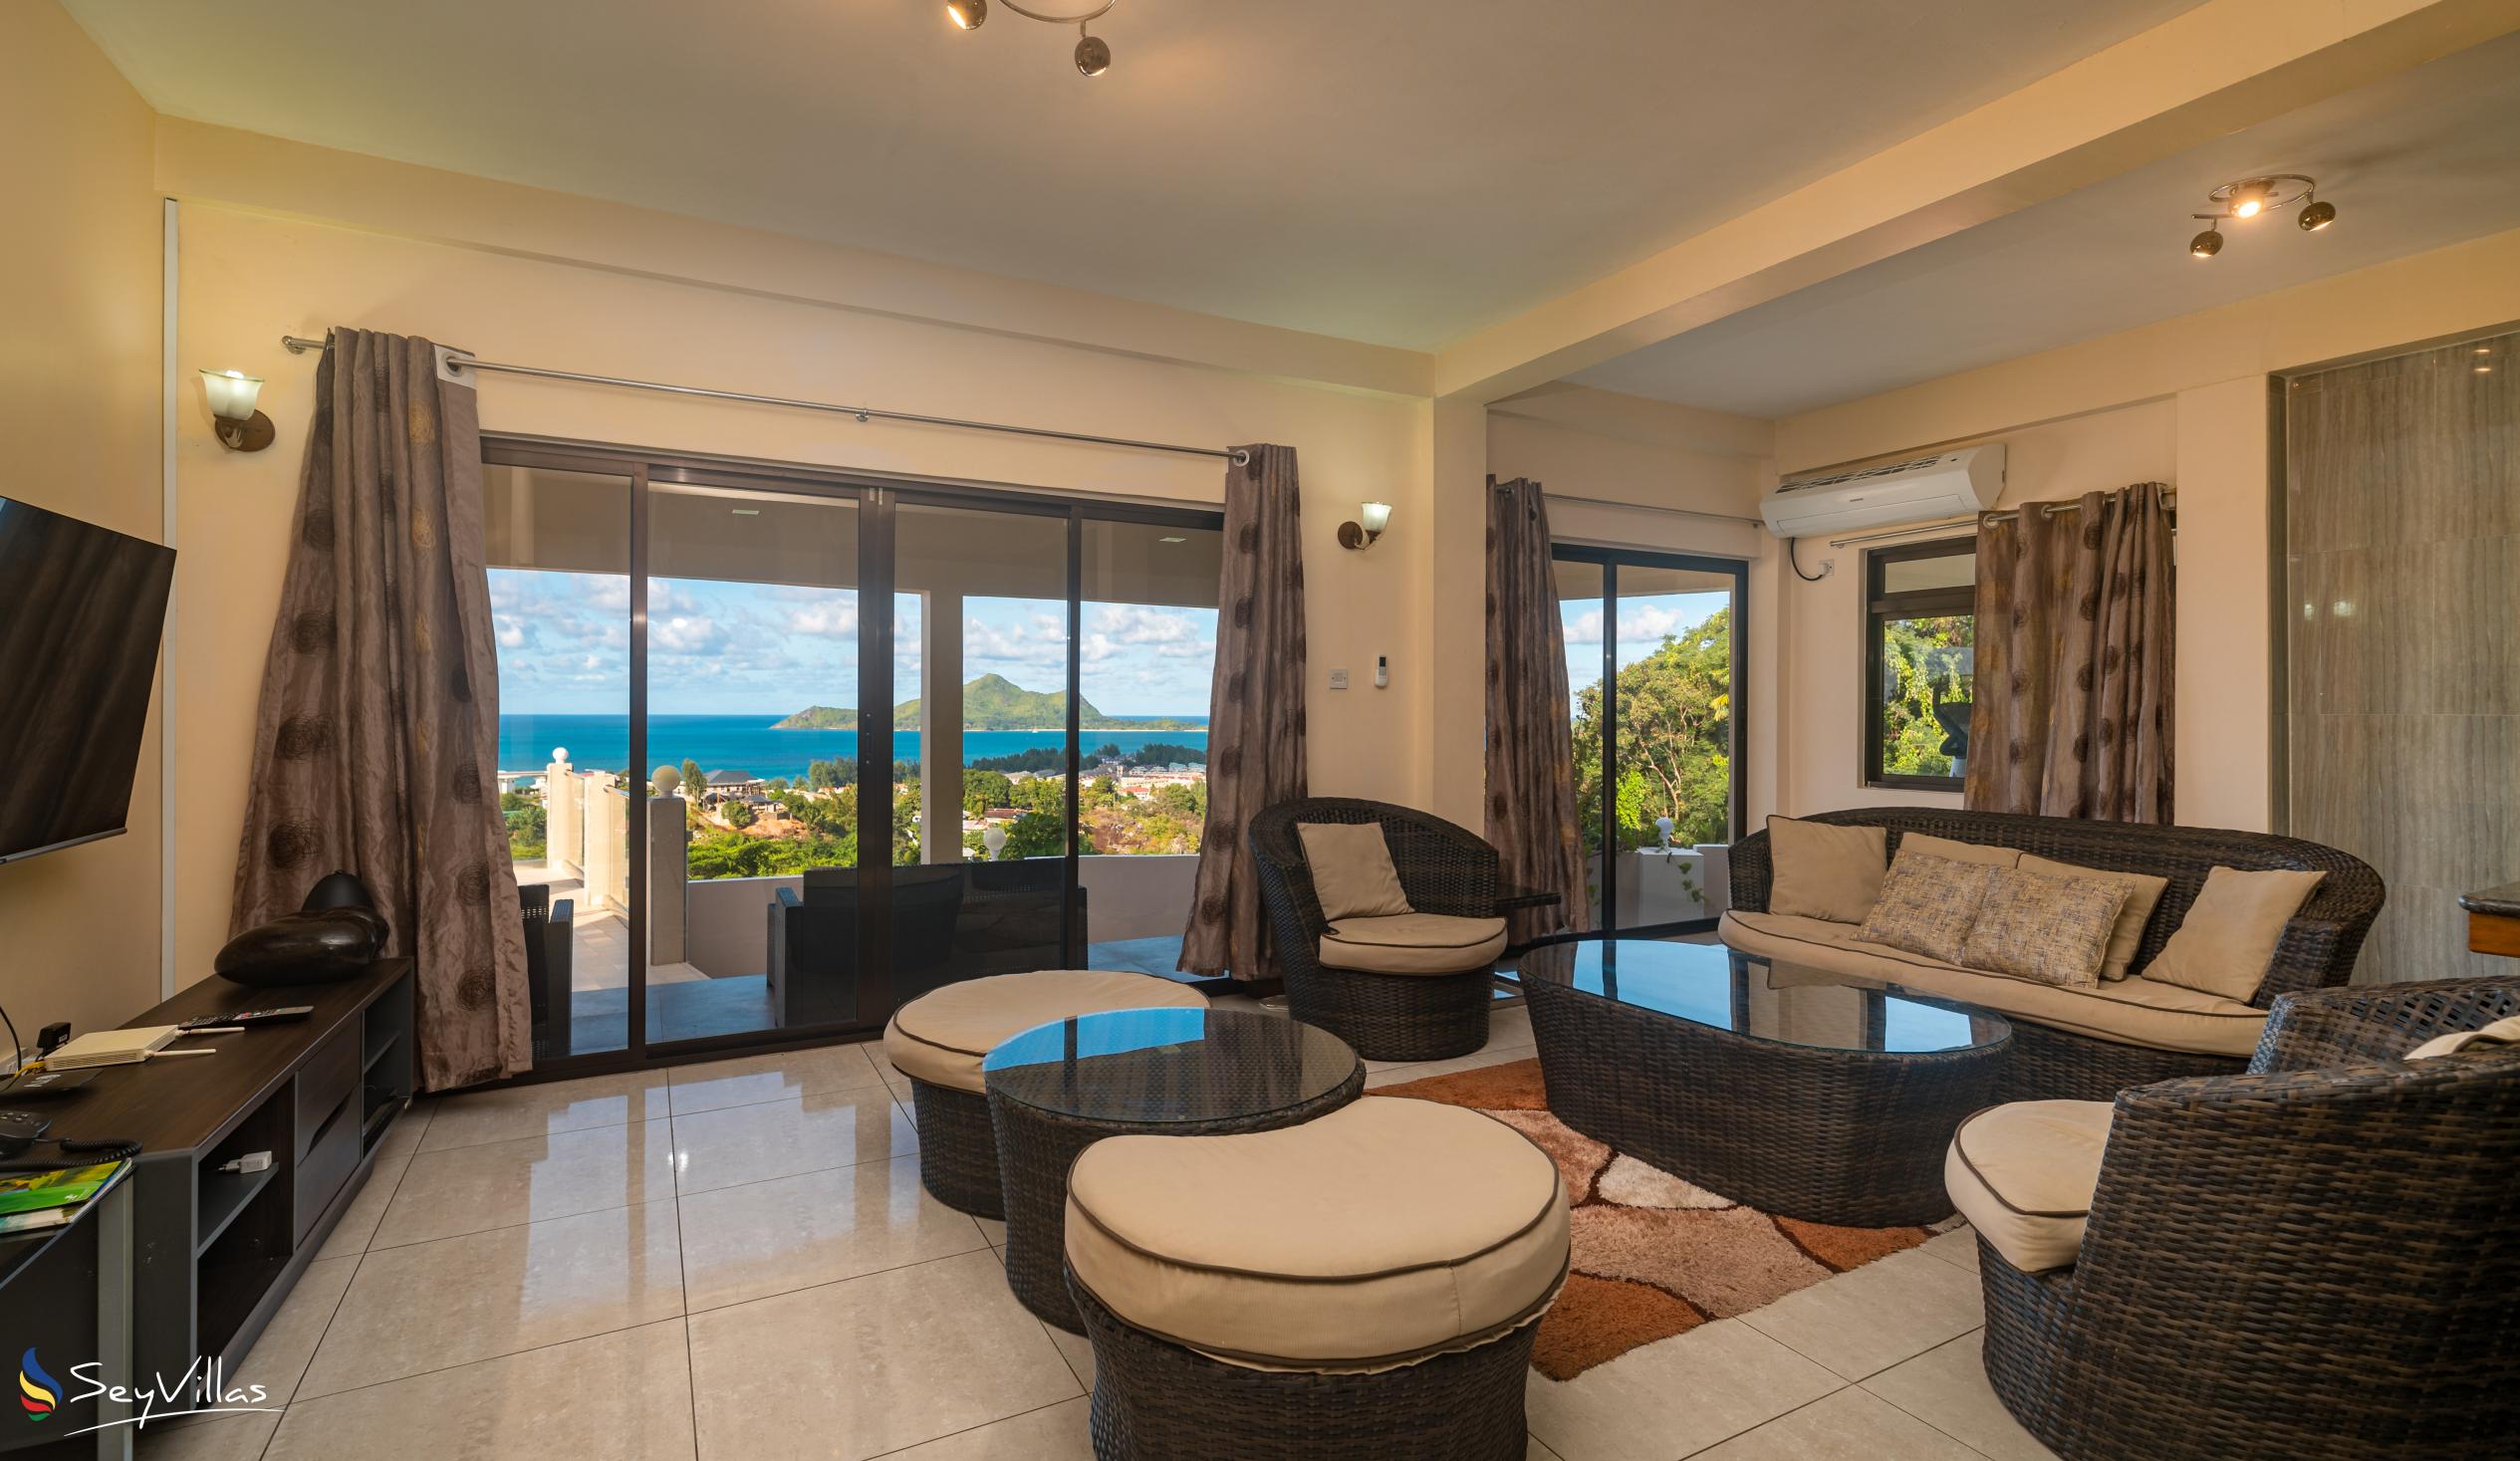 Foto 64: Maison L'Horizon - Appartement 2 chambres Vann Nor - Mahé (Seychelles)